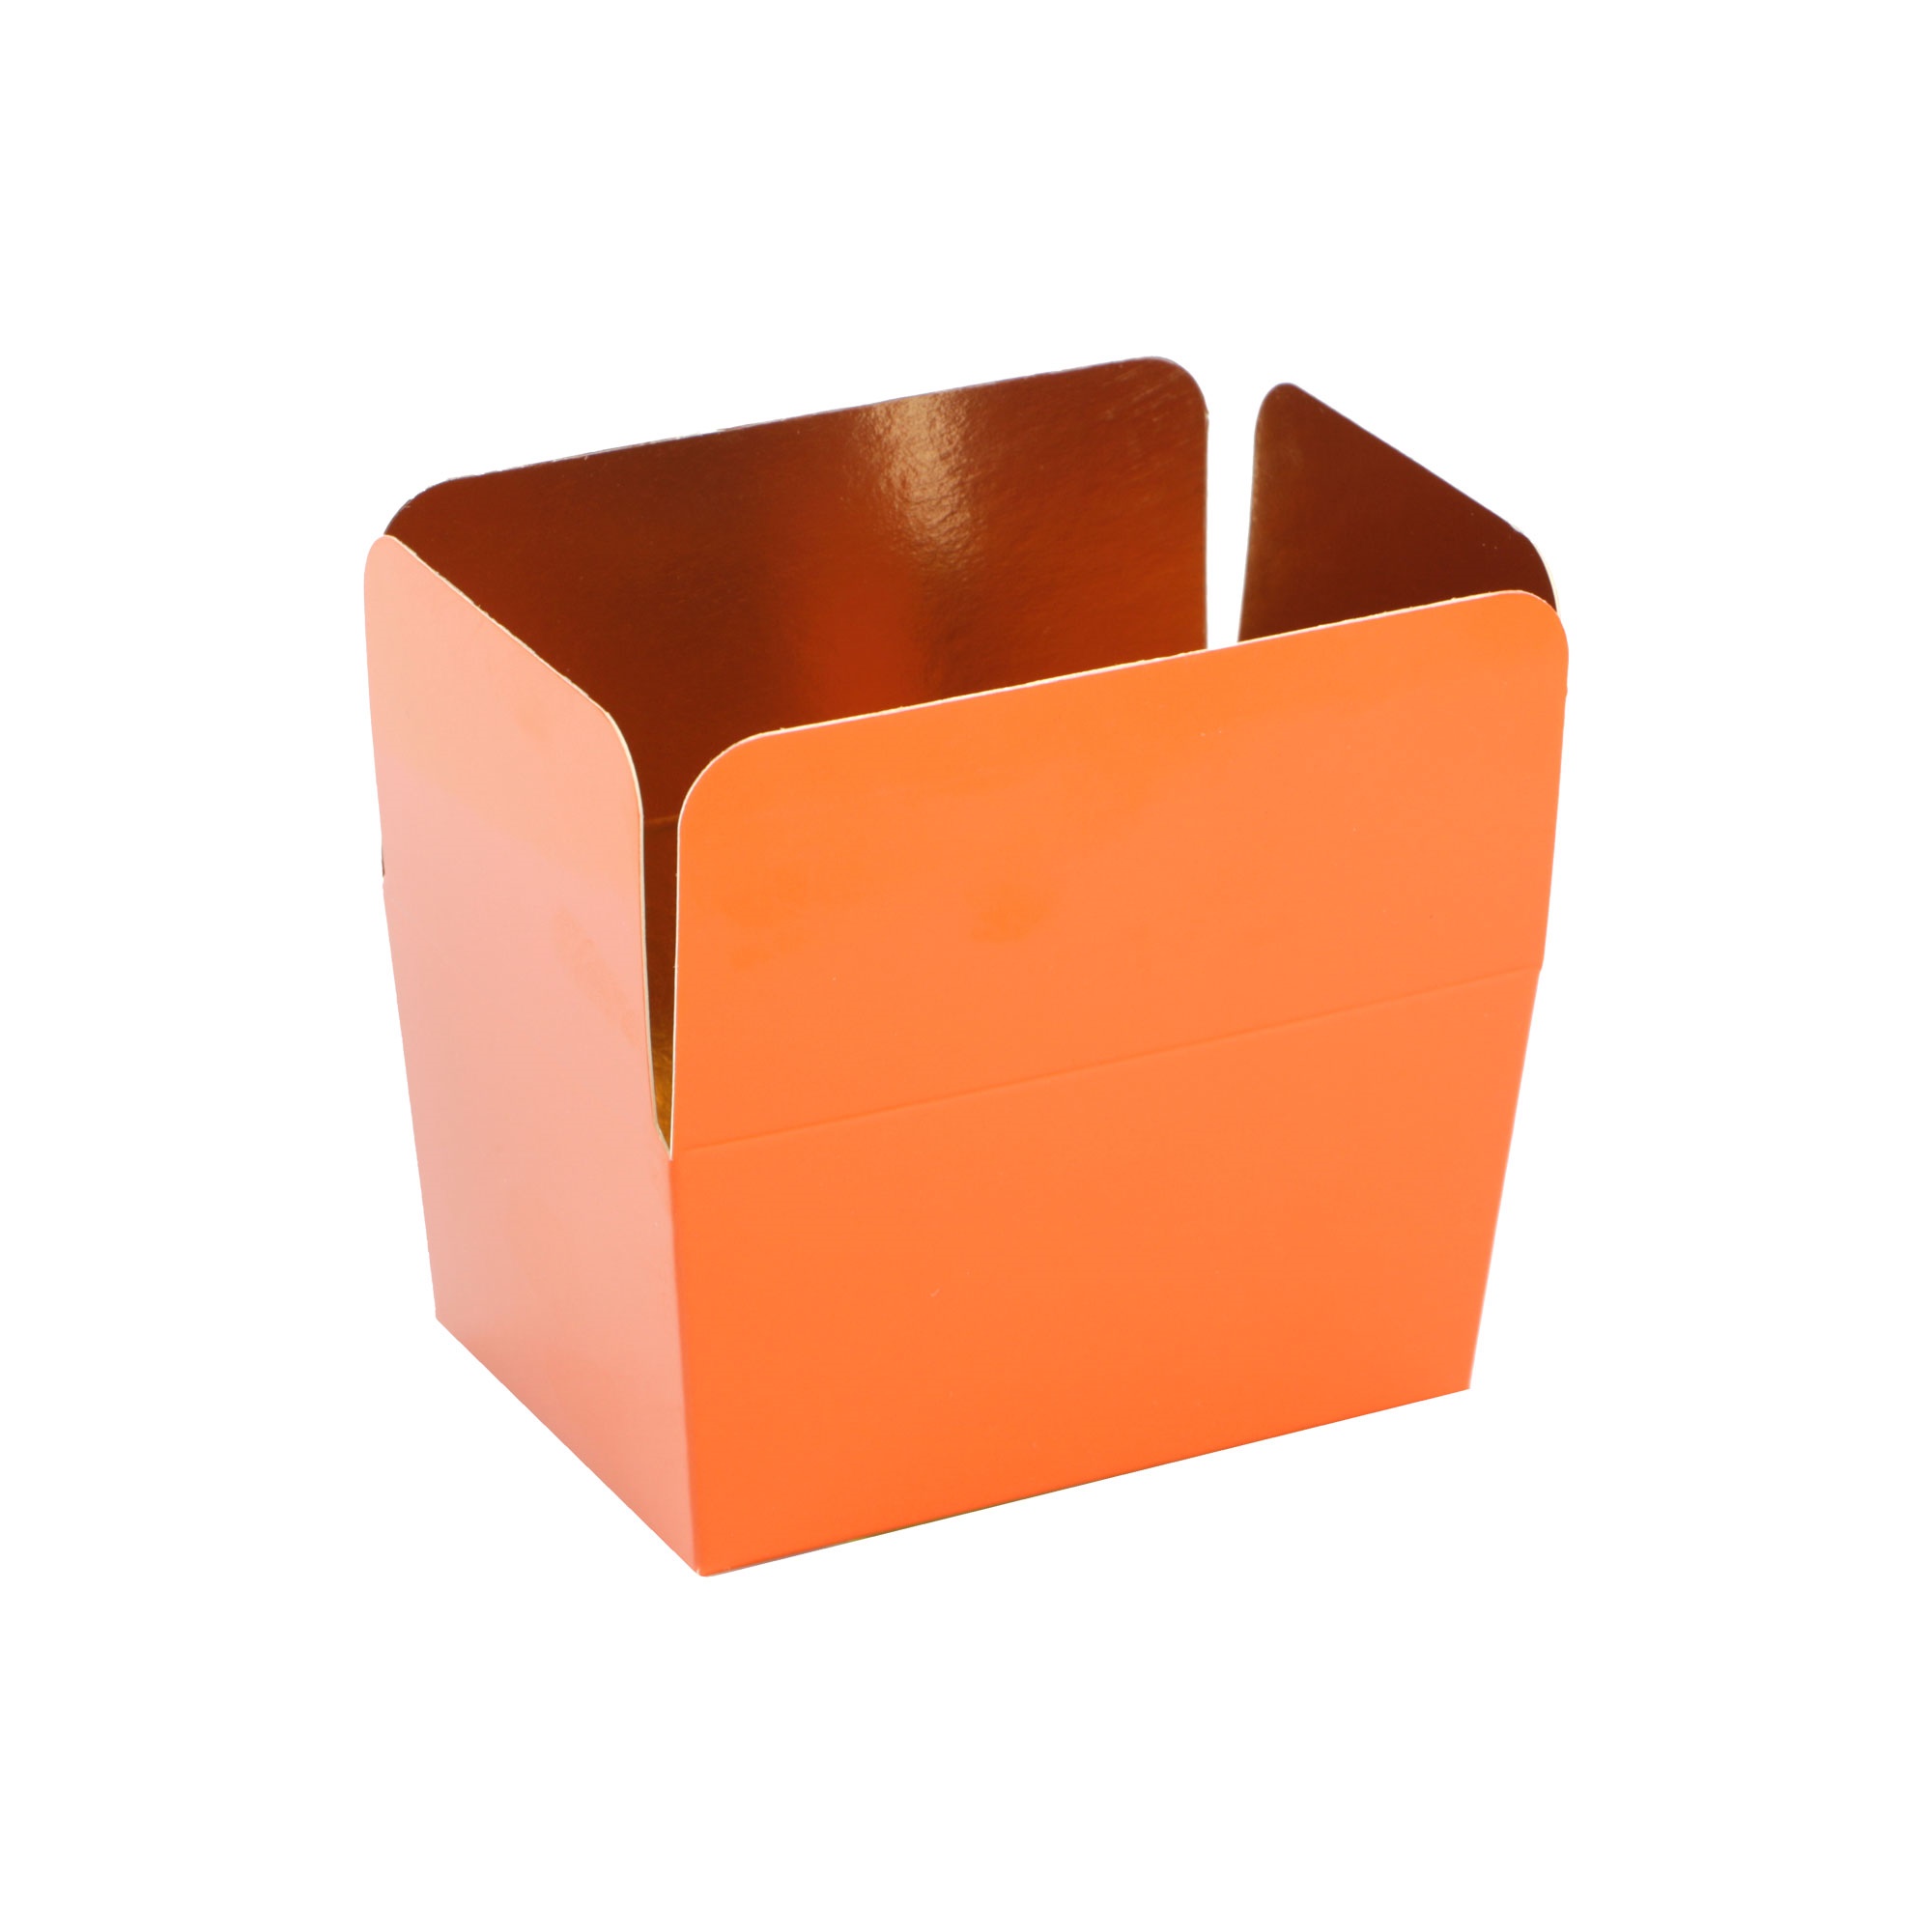 Picture of Pak à 24 luxe bonbondoos 250 gram brique (oranje)